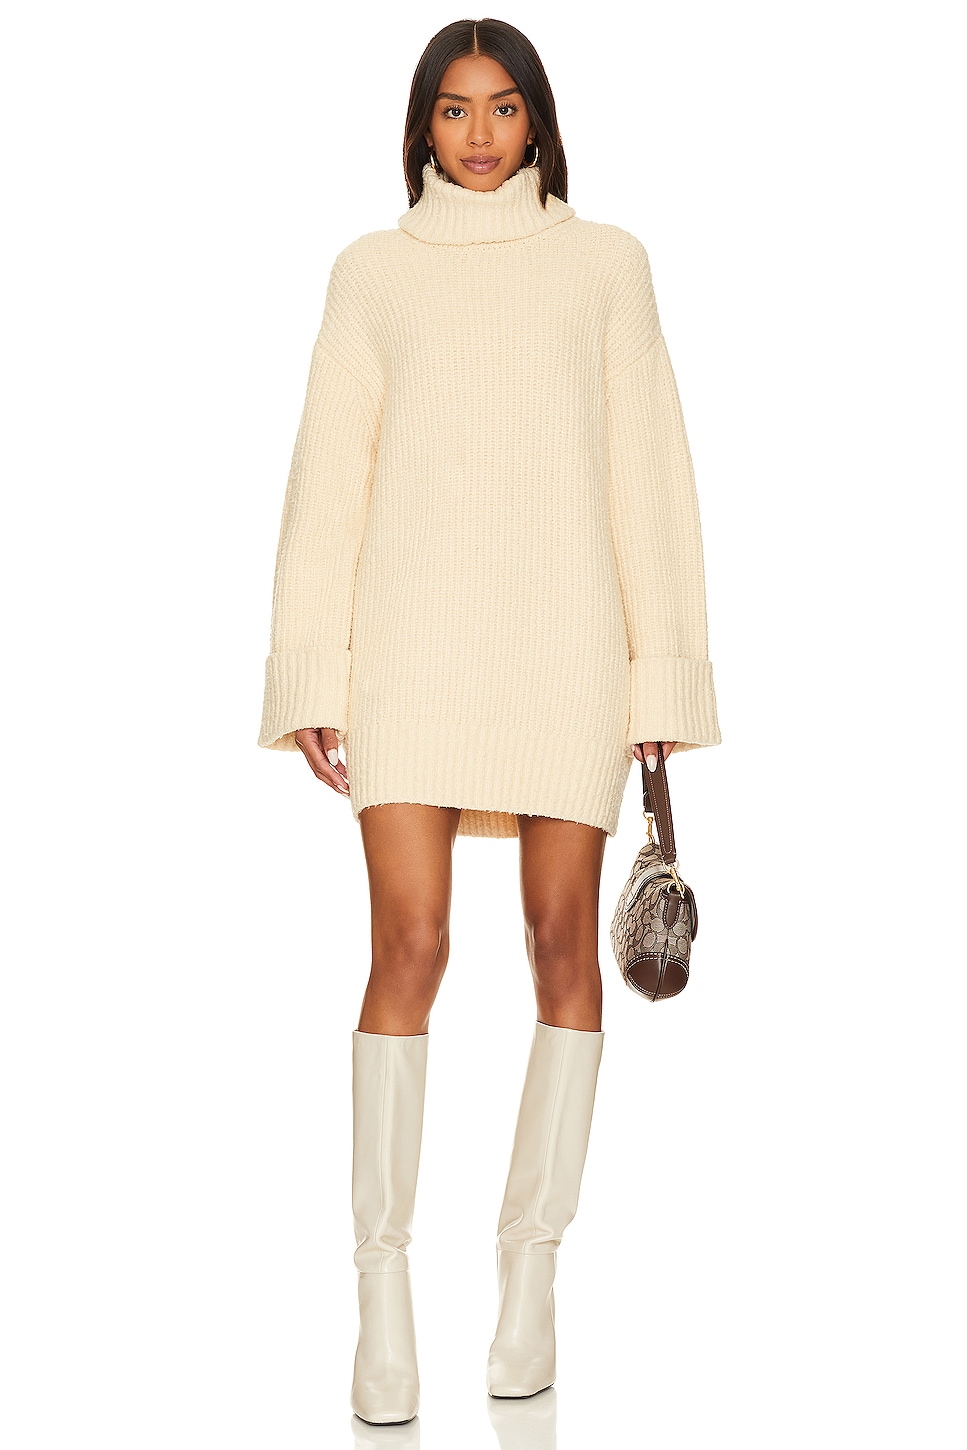 sweater dresses for winter - Kerina Wang